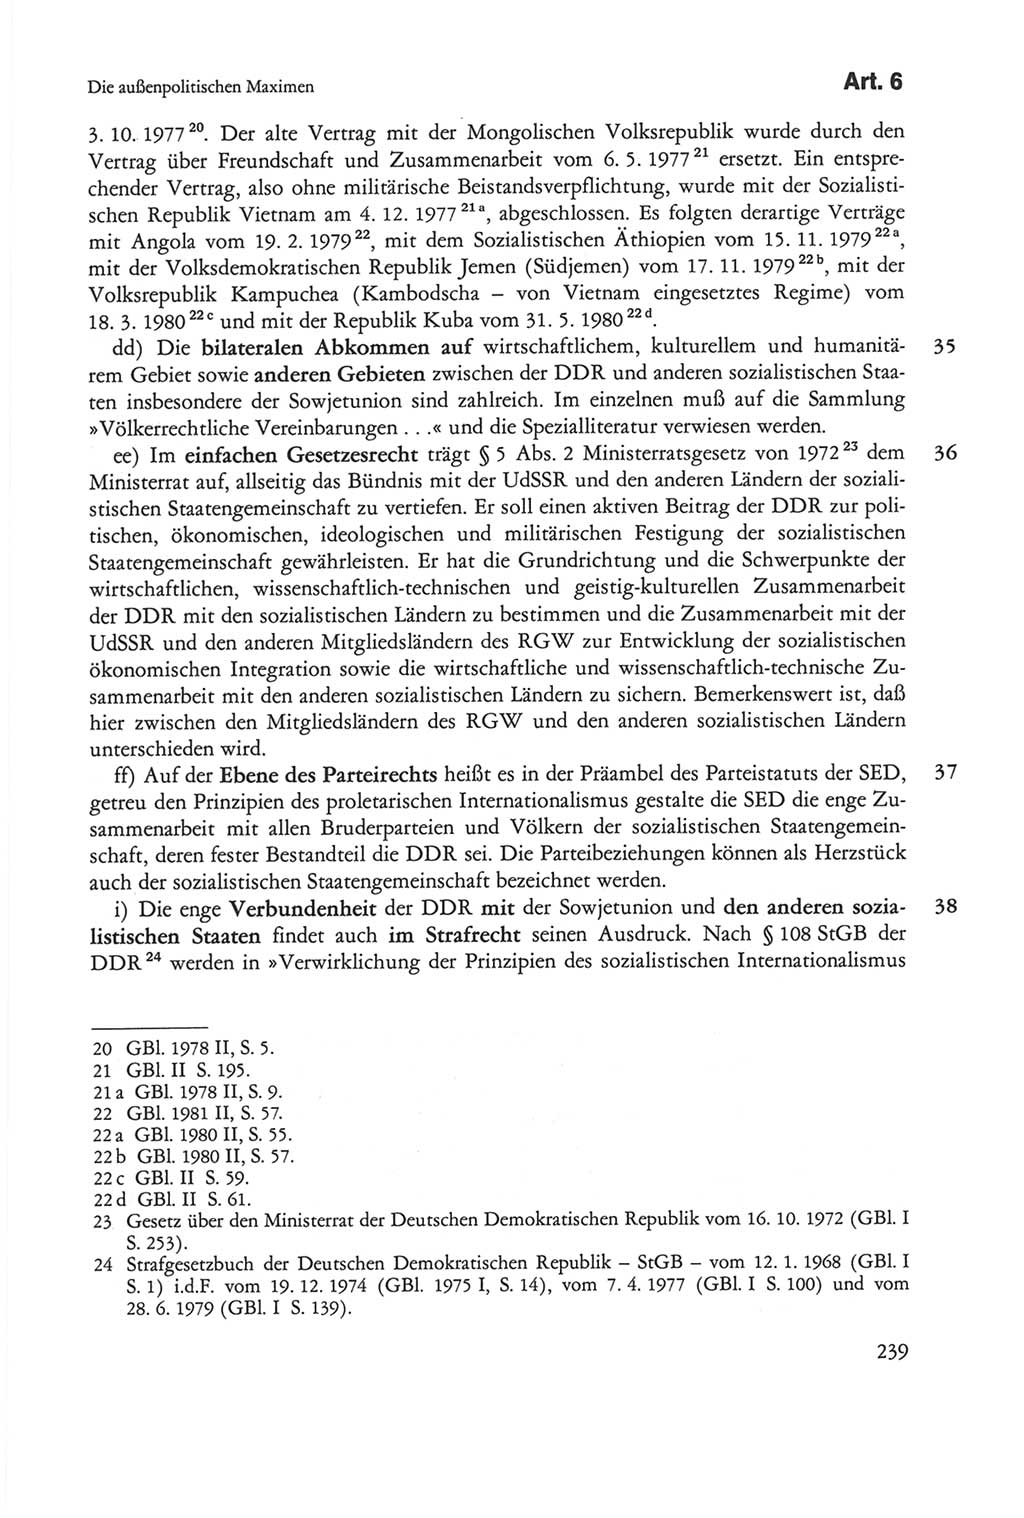 Die sozialistische Verfassung der Deutschen Demokratischen Republik (DDR), Kommentar 1982, Seite 239 (Soz. Verf. DDR Komm. 1982, S. 239)